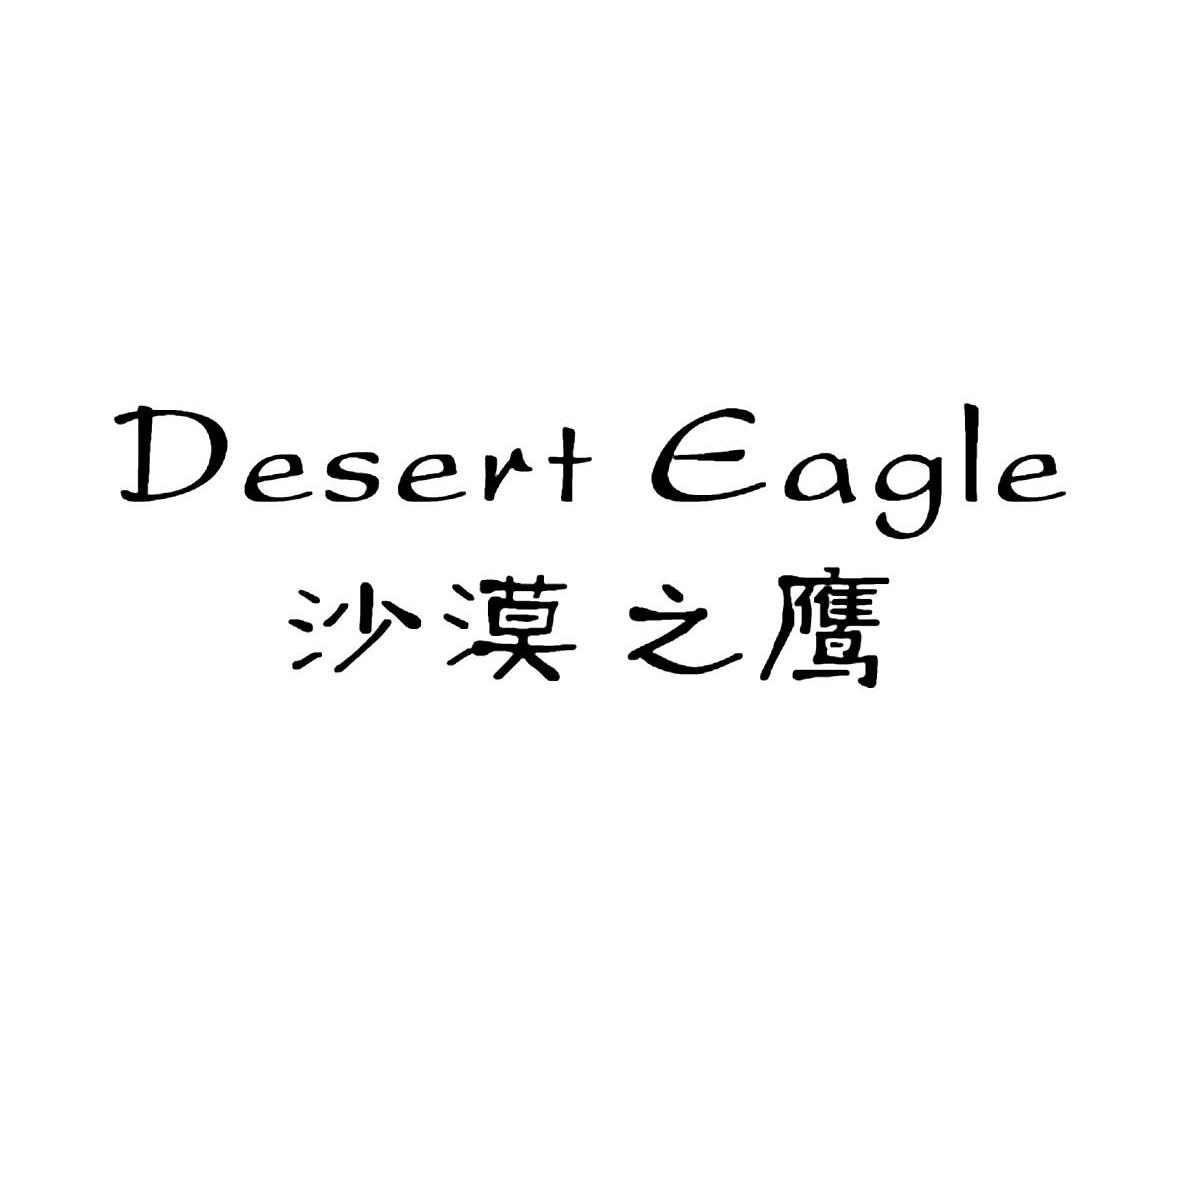 转让商标-沙漠之鹰 DESERT EAGLE